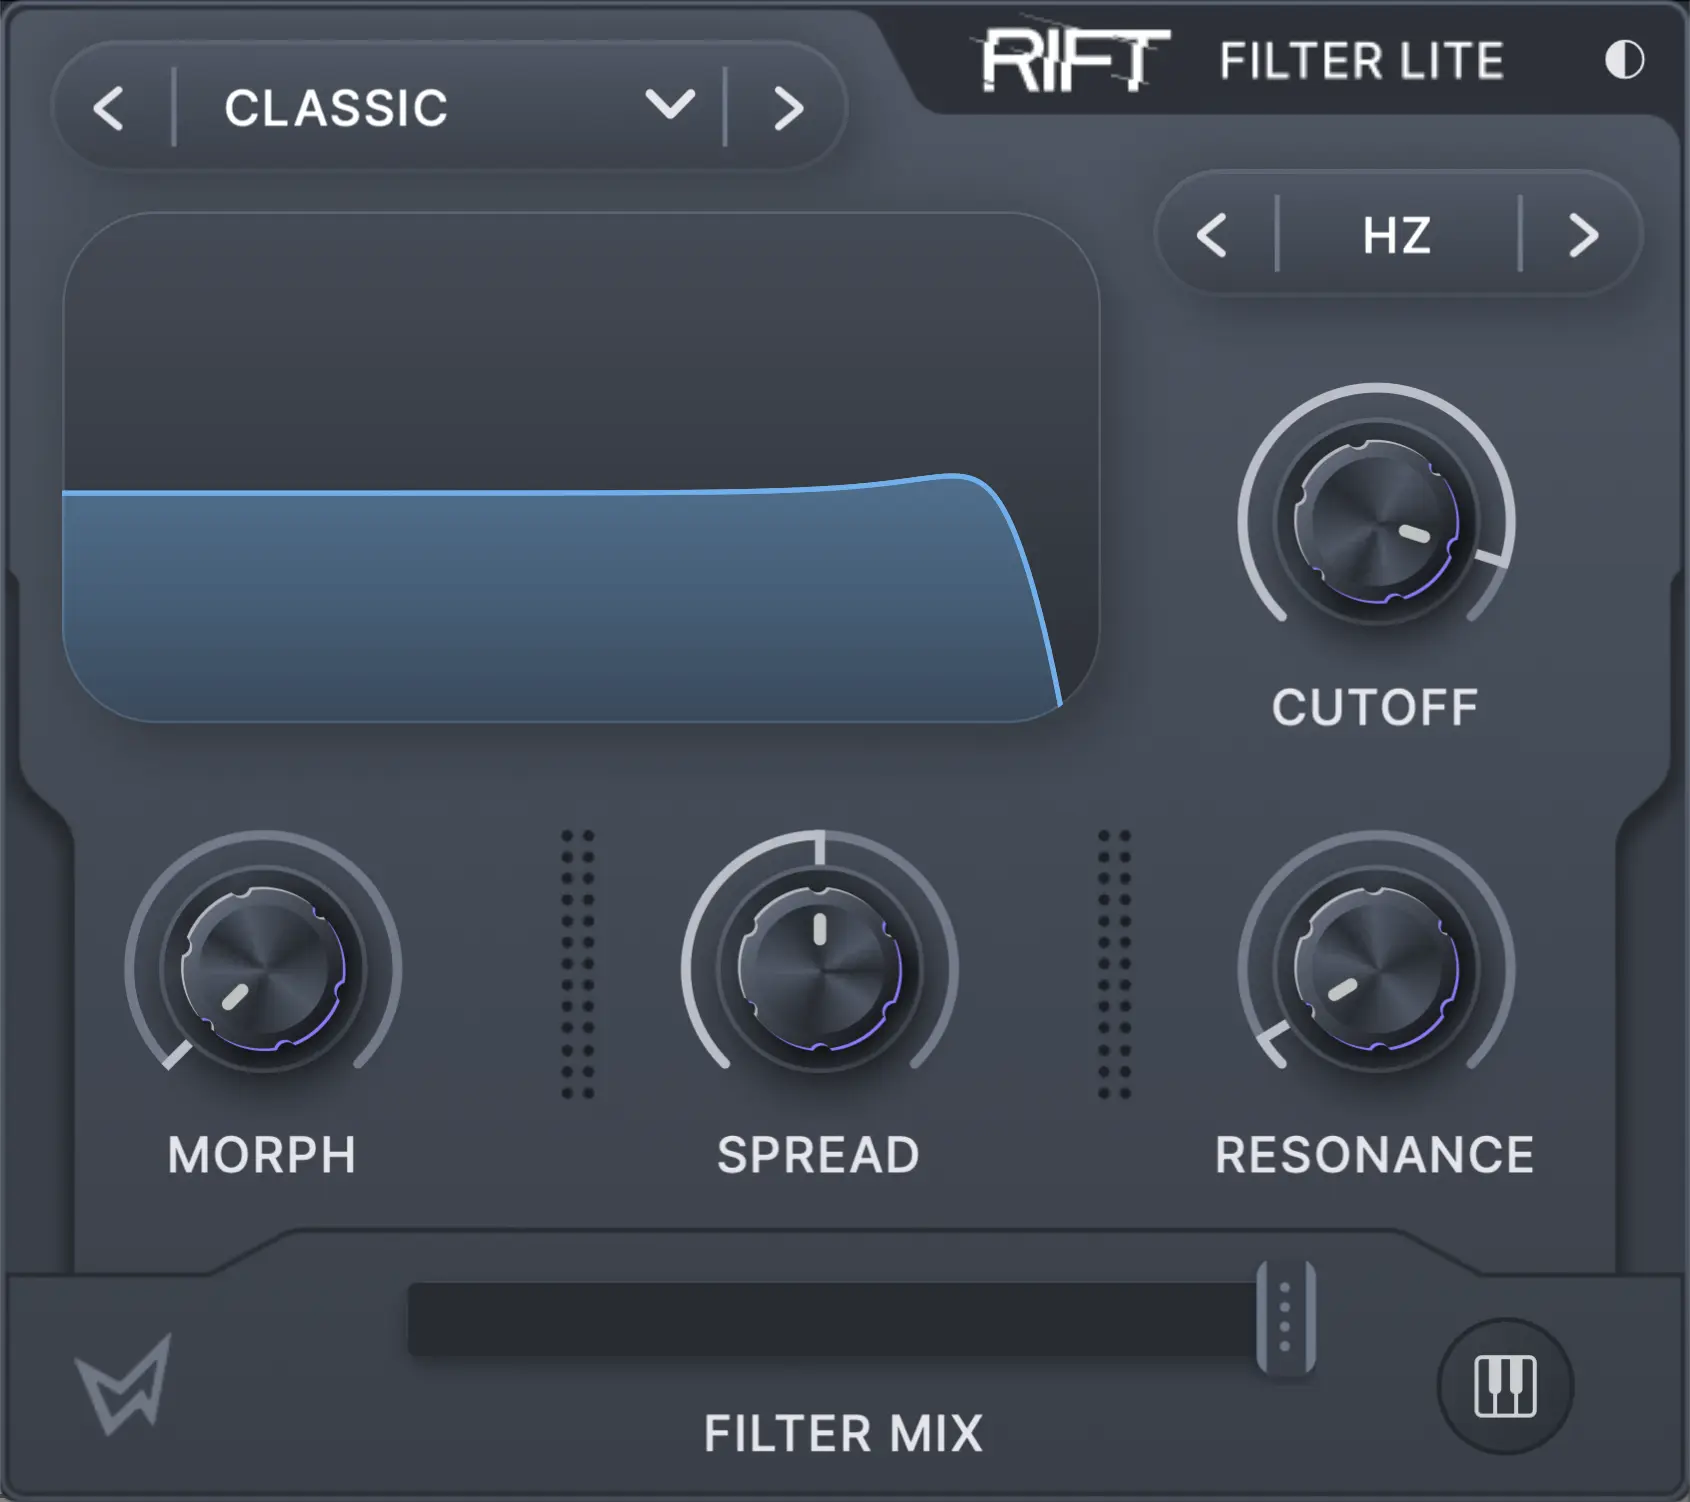 Rift Filter Lite home screen